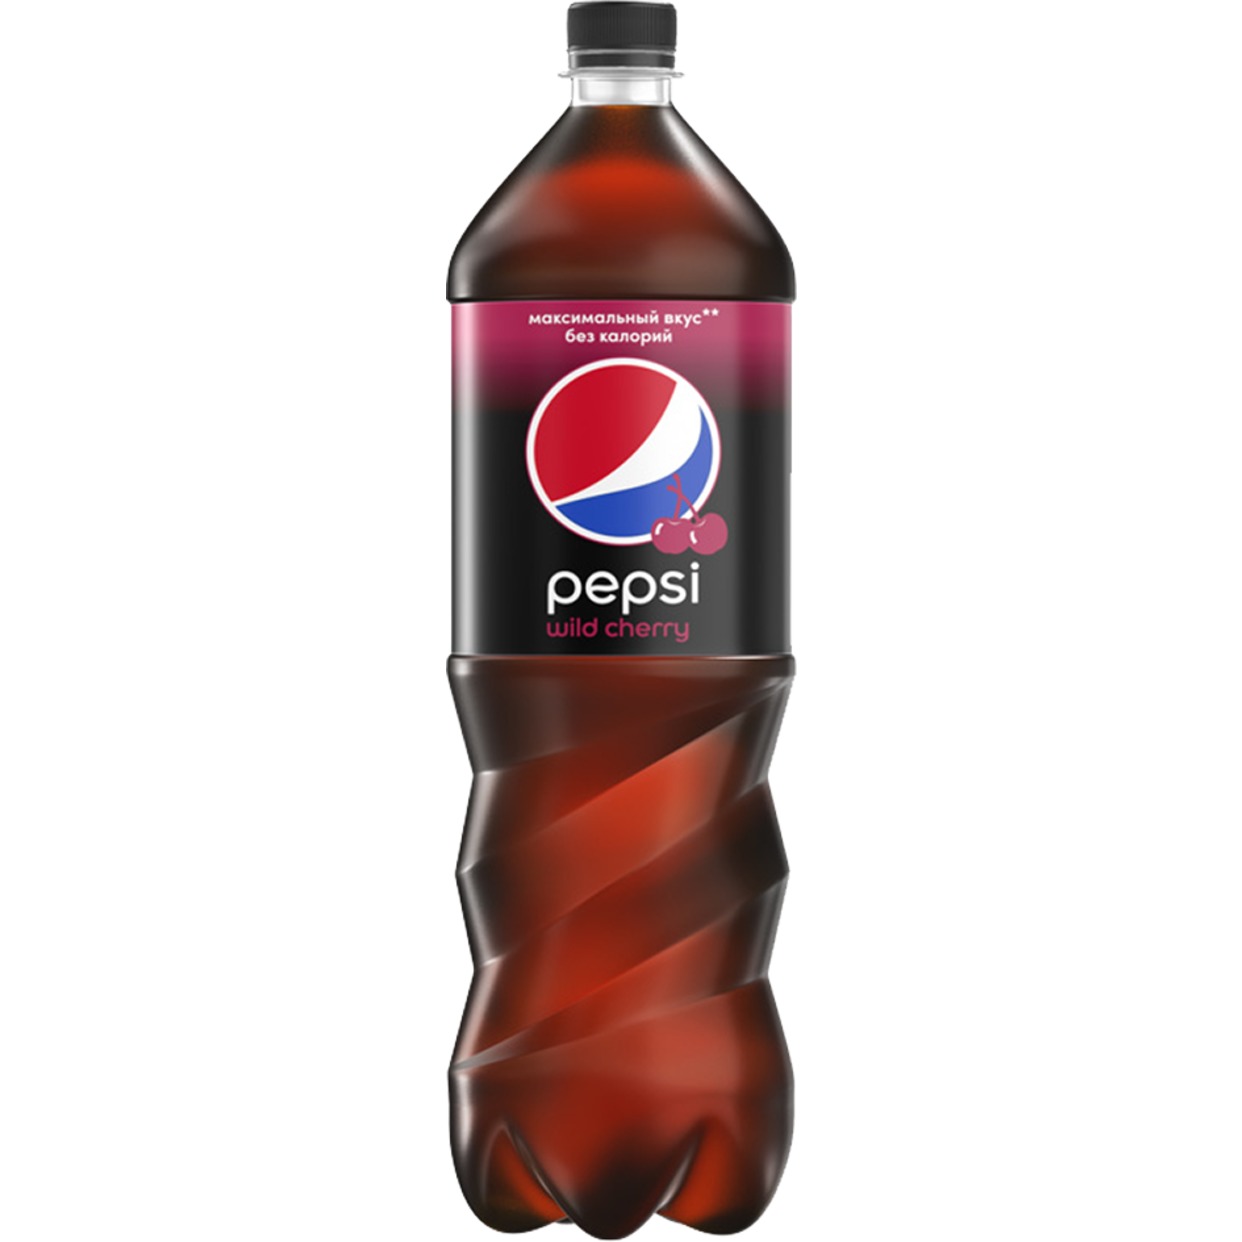 Напитки Pepsi Wild Cherry, 1,5 л по акции в Пятерочке